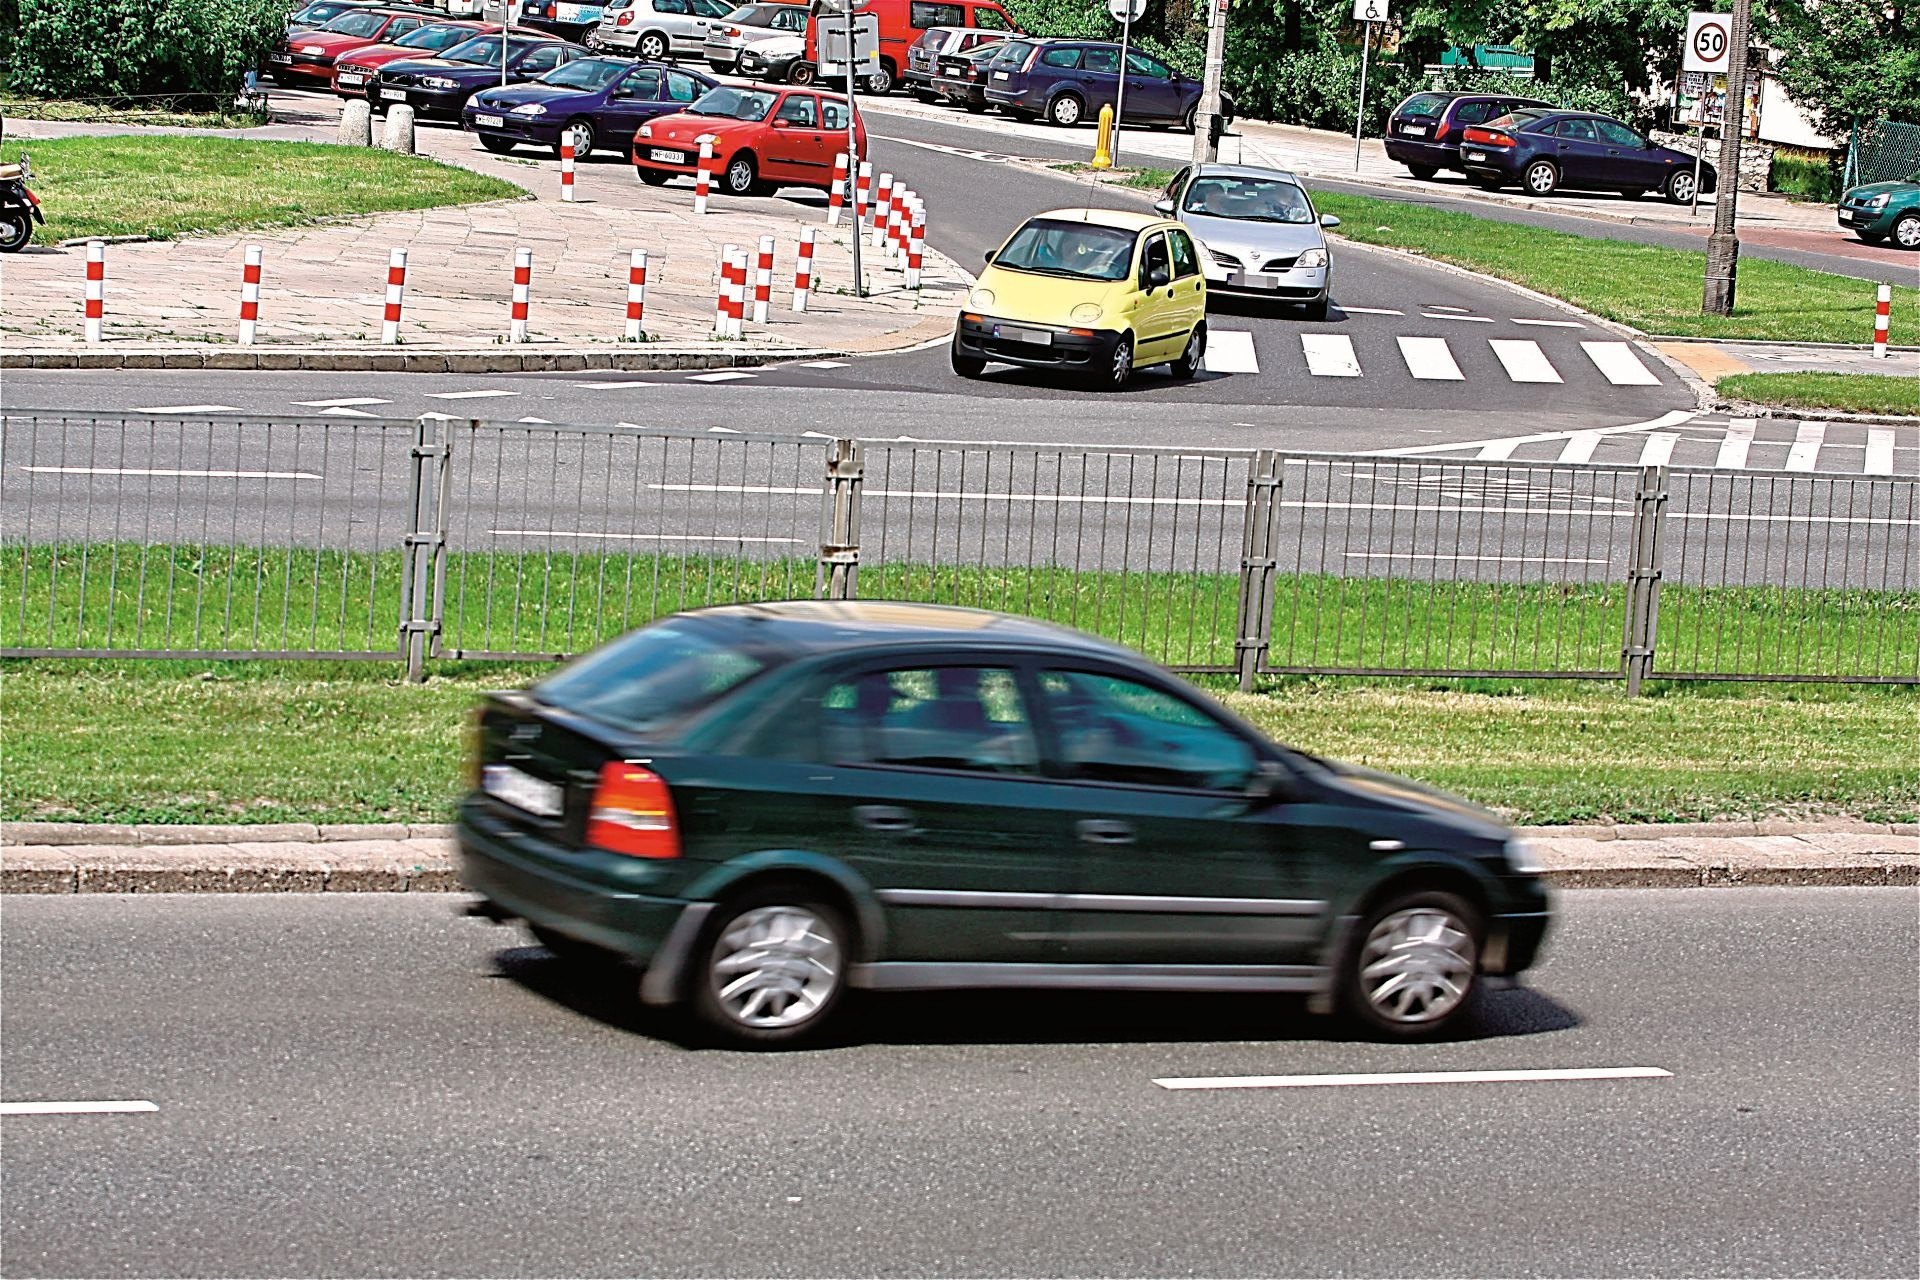 Ograniczenia prędkości w Polsce. Jak szybko można jechać?